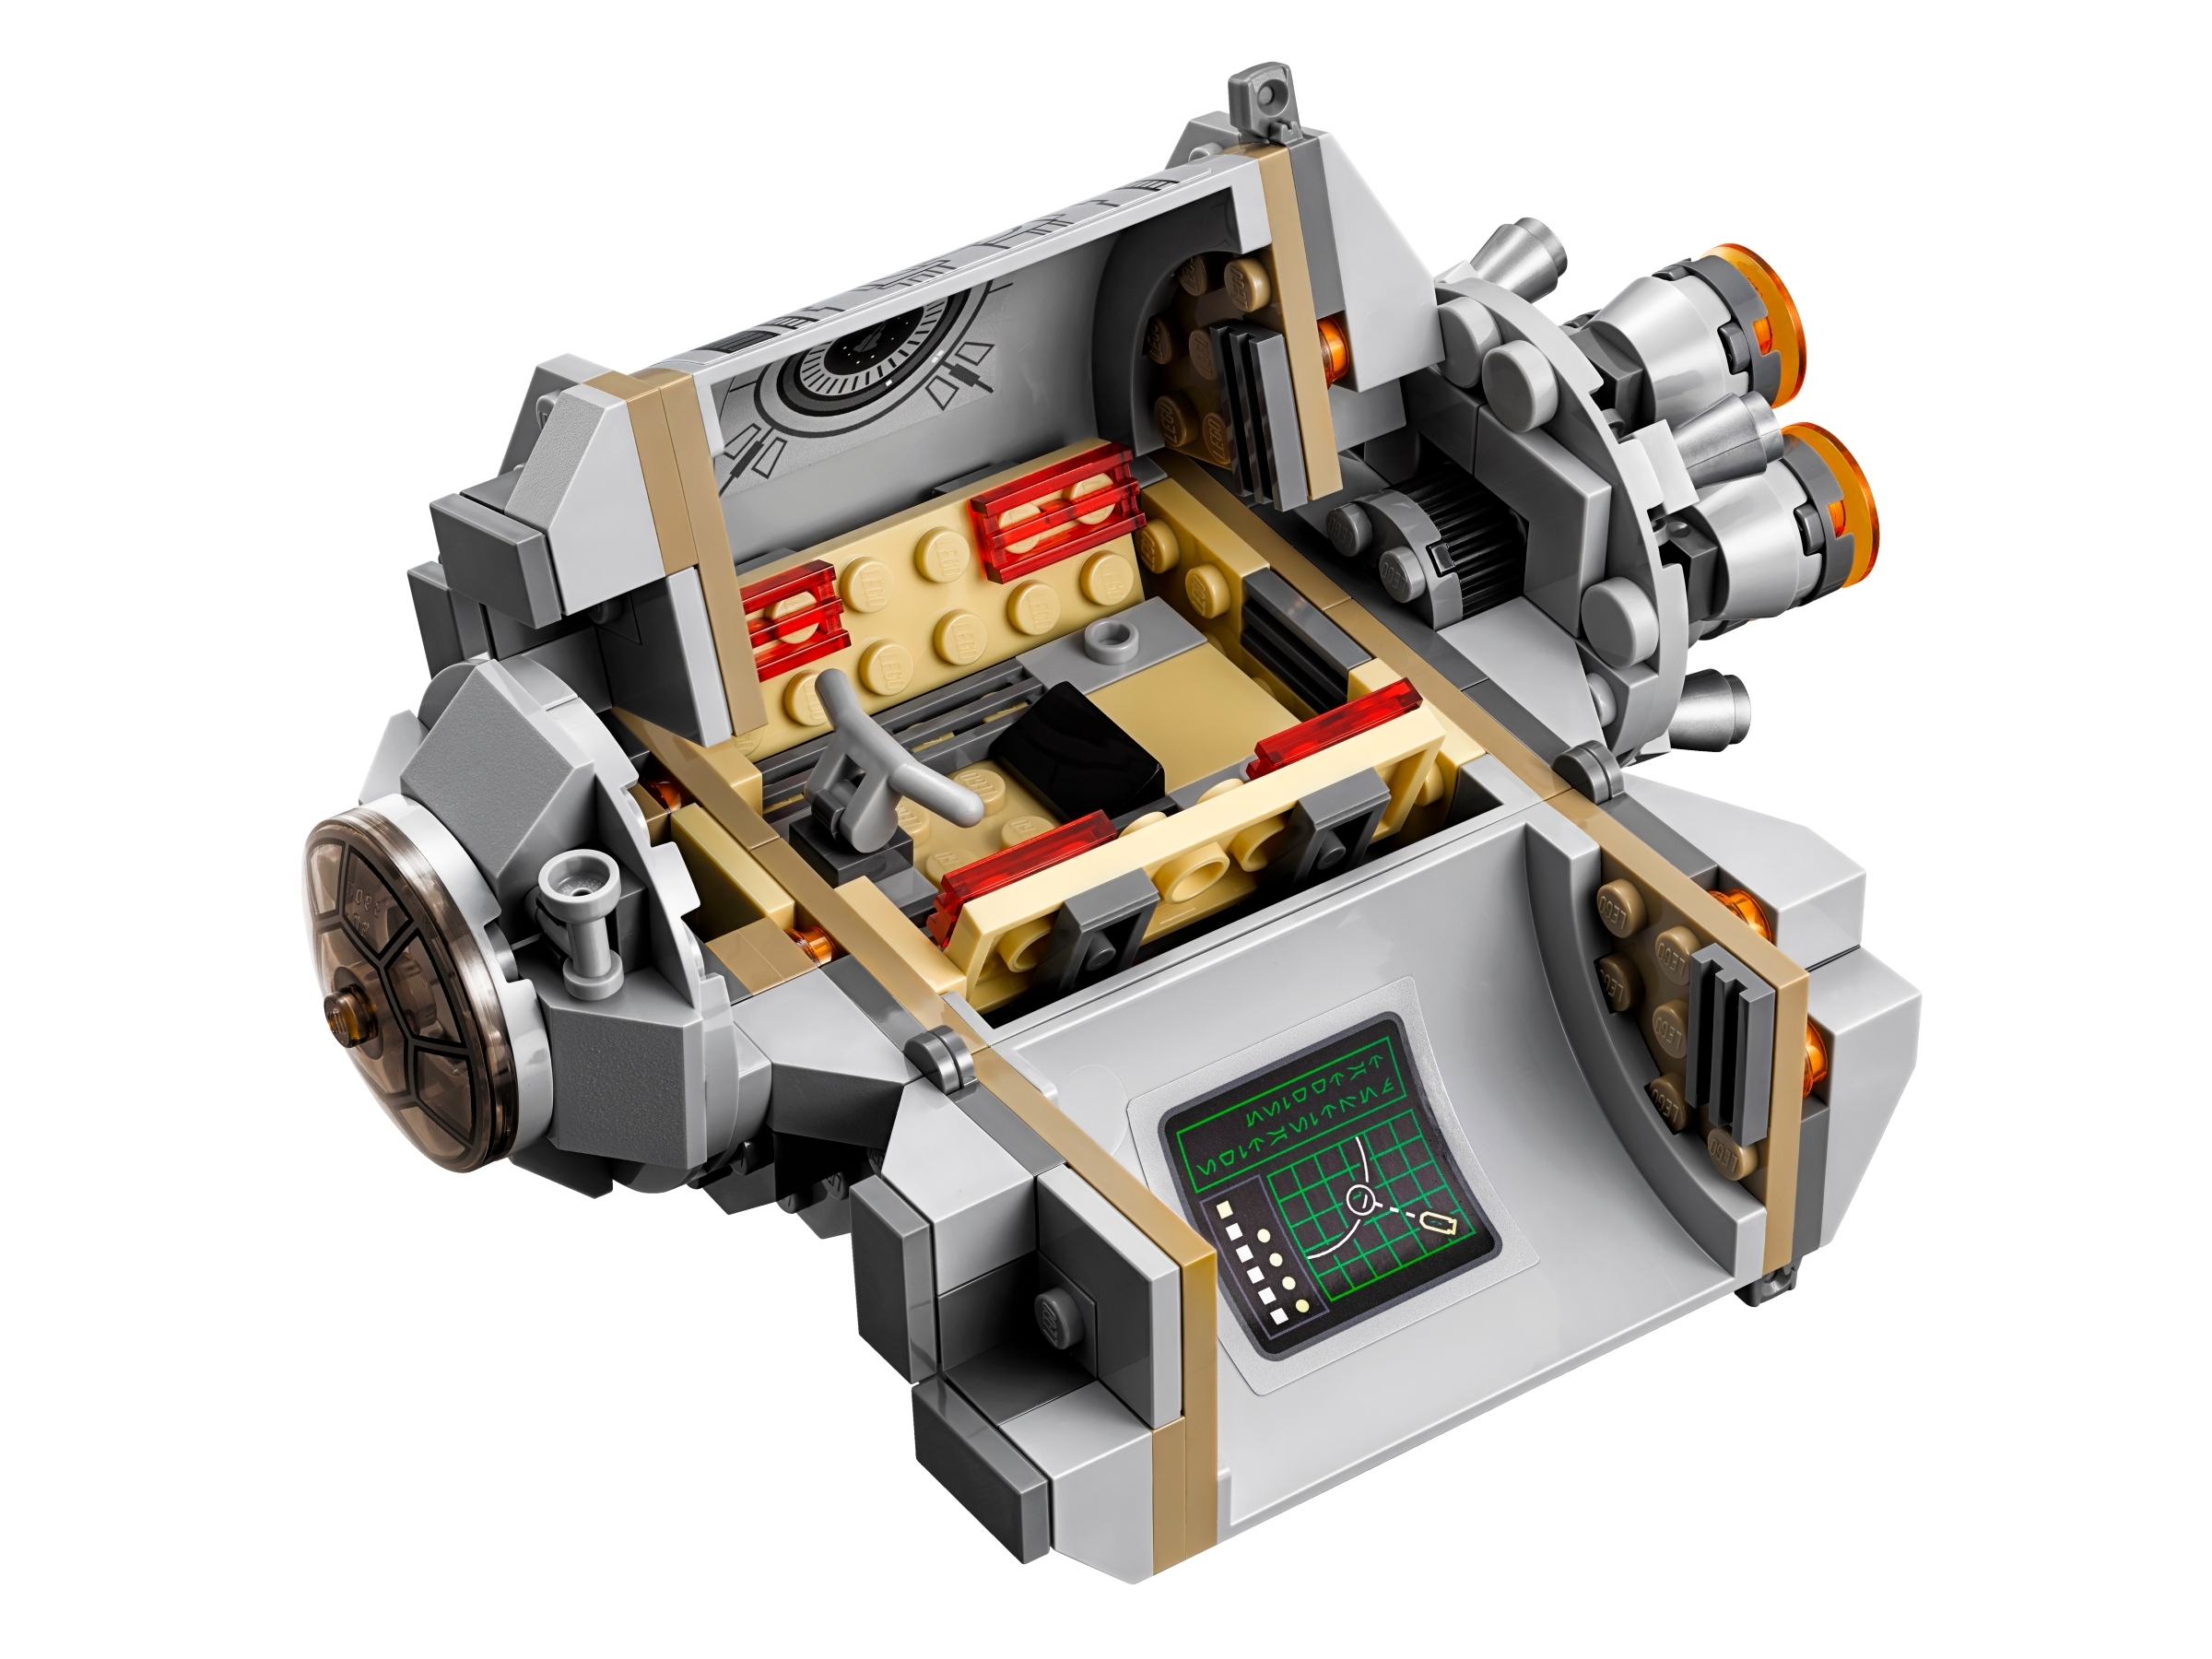 LEGO Star Wars Droid Escape Pod 75136